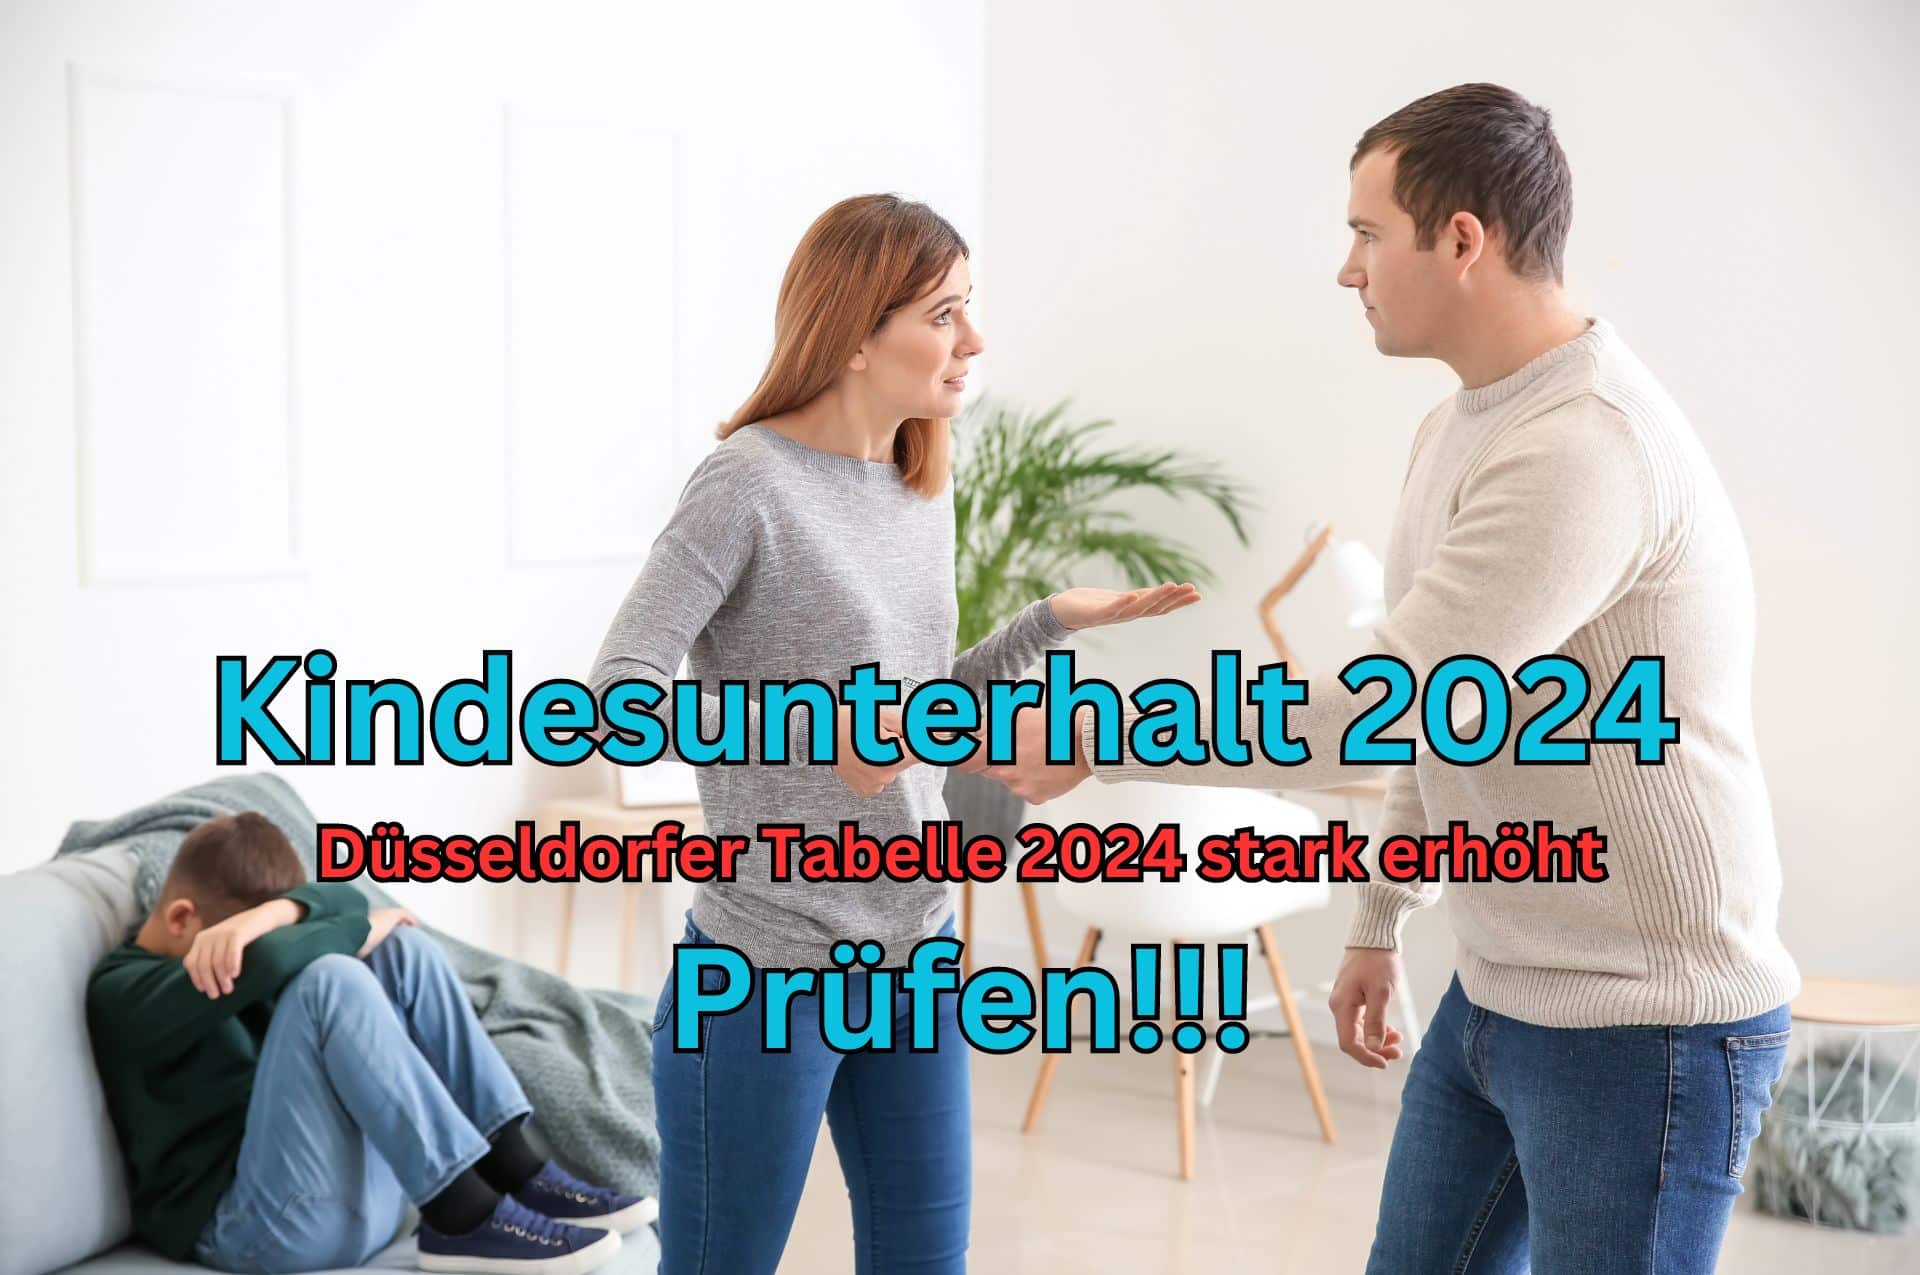 Der Kindesunterhalt wurde zum 1. Januar 2024 erhöht. Basis ist die neue Düsseldorfer Tabelle 2024.